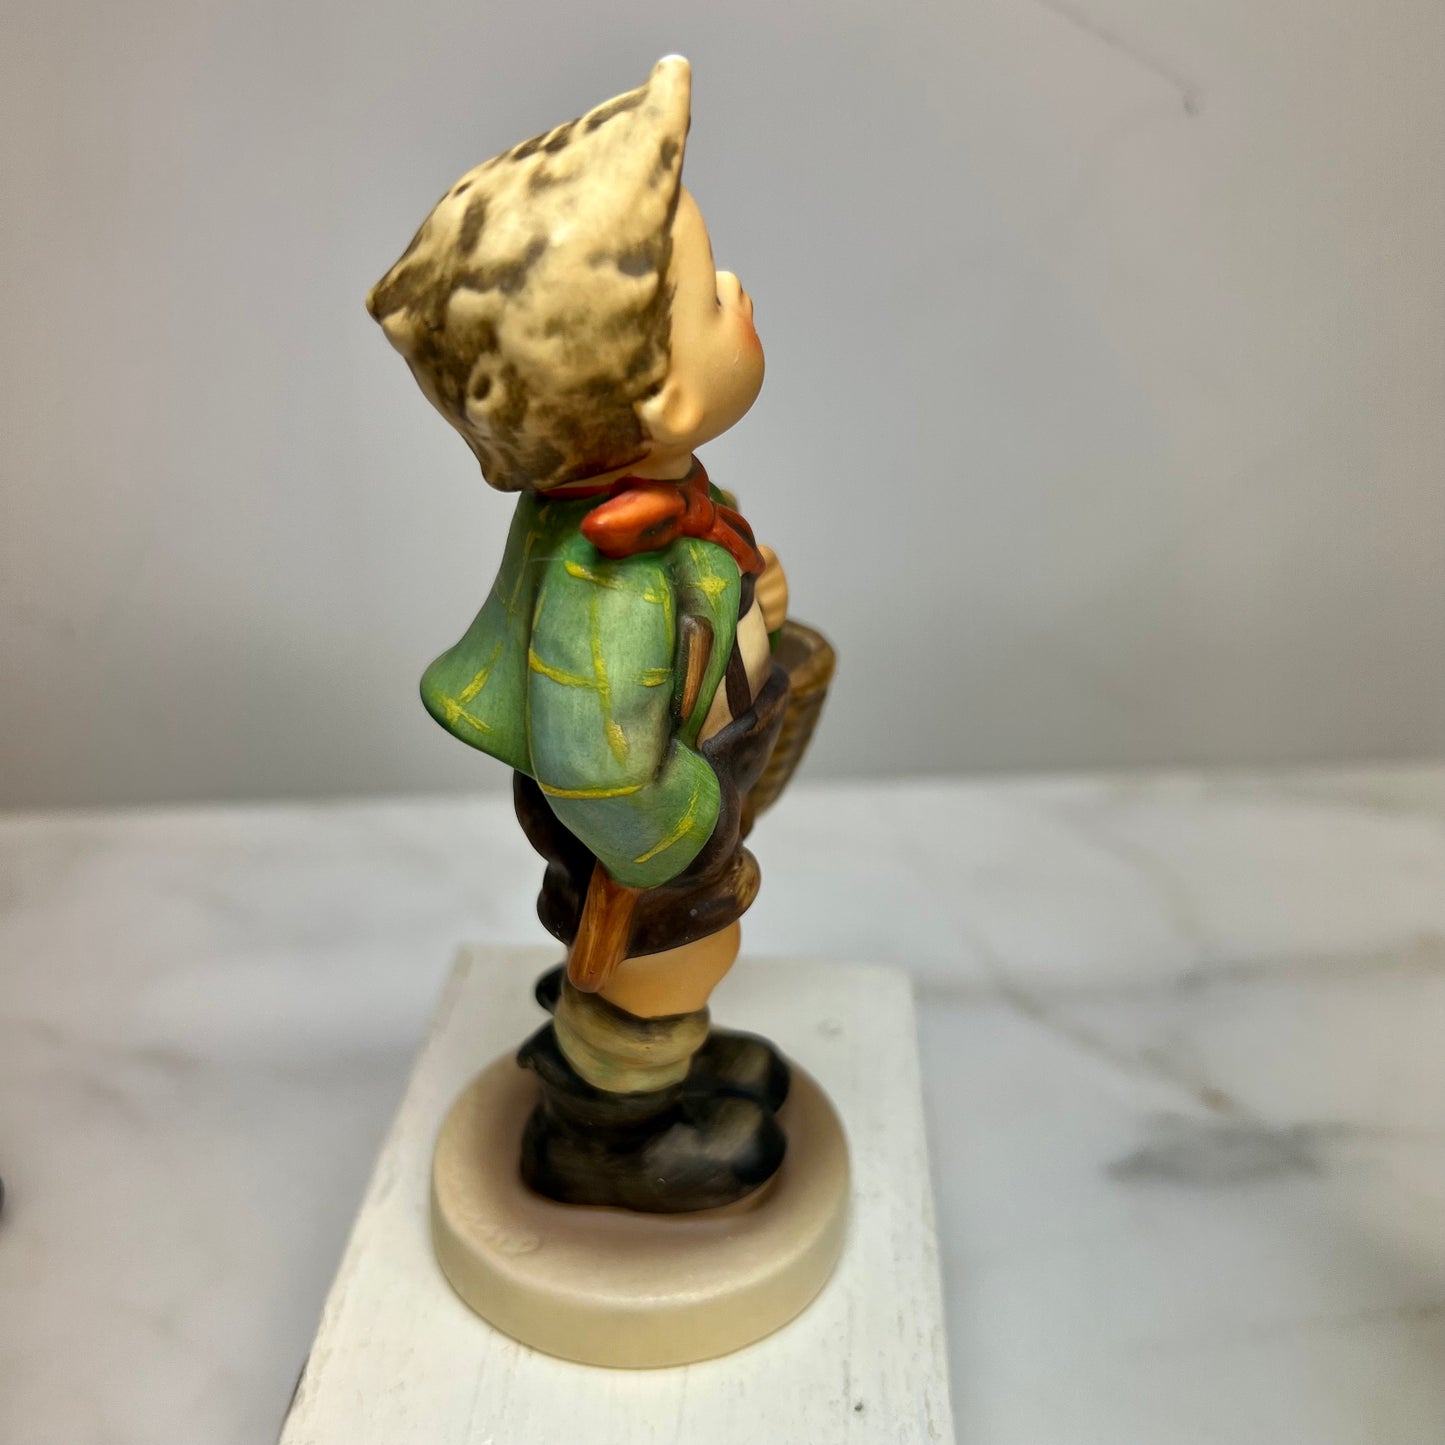 Hummel Figurine "Village Boy " HUM 51 2/0  TM 5